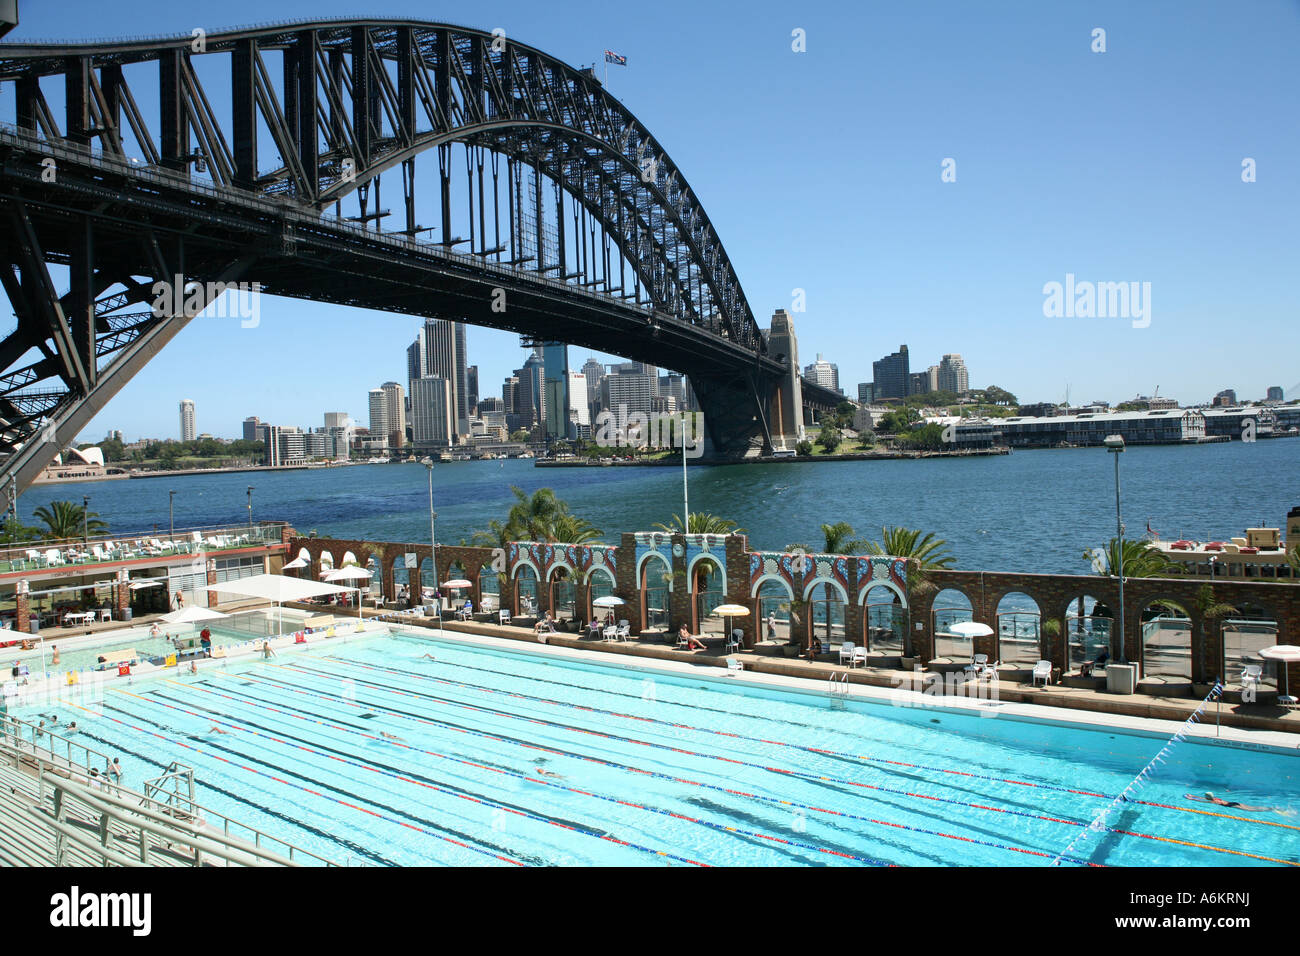 Piscine olympique de North Sydney et le Harbour Bridge, Sydney, Australie Banque D'Images